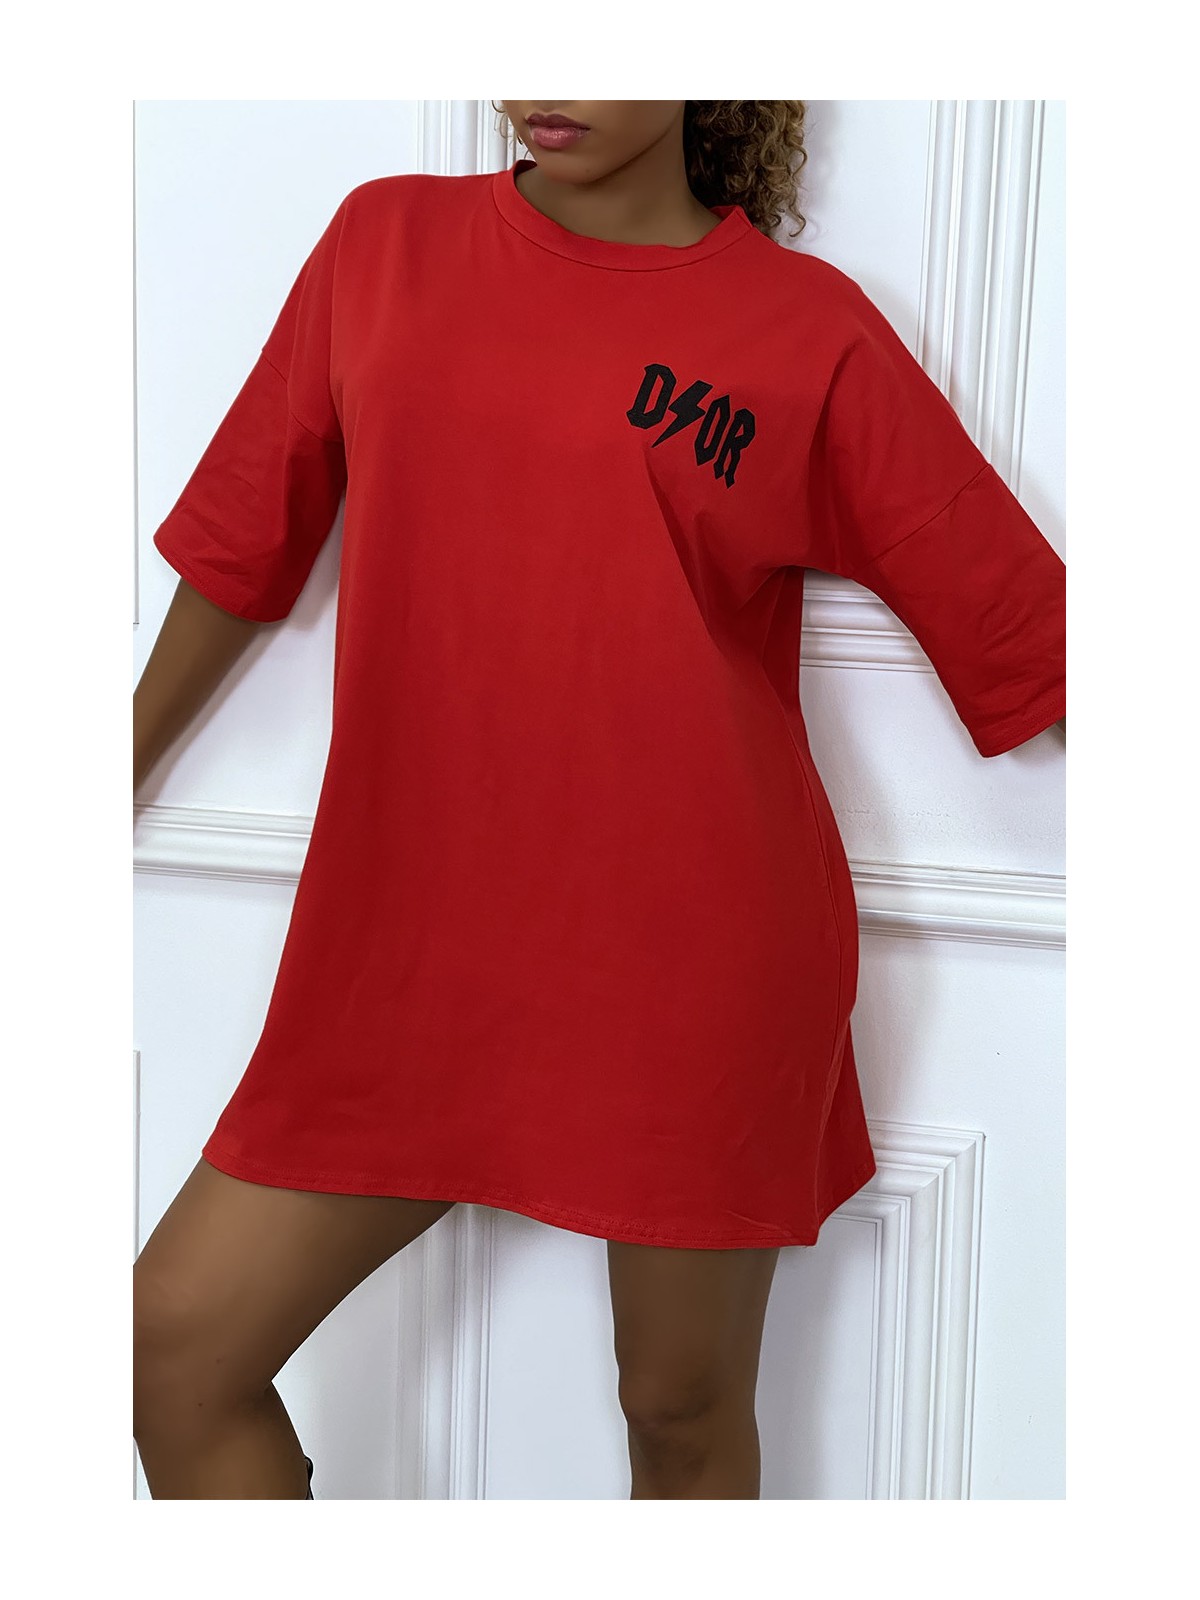 Tee-shirt oversize rouge tendance, écriture "D/or", manche mi-longue - 7